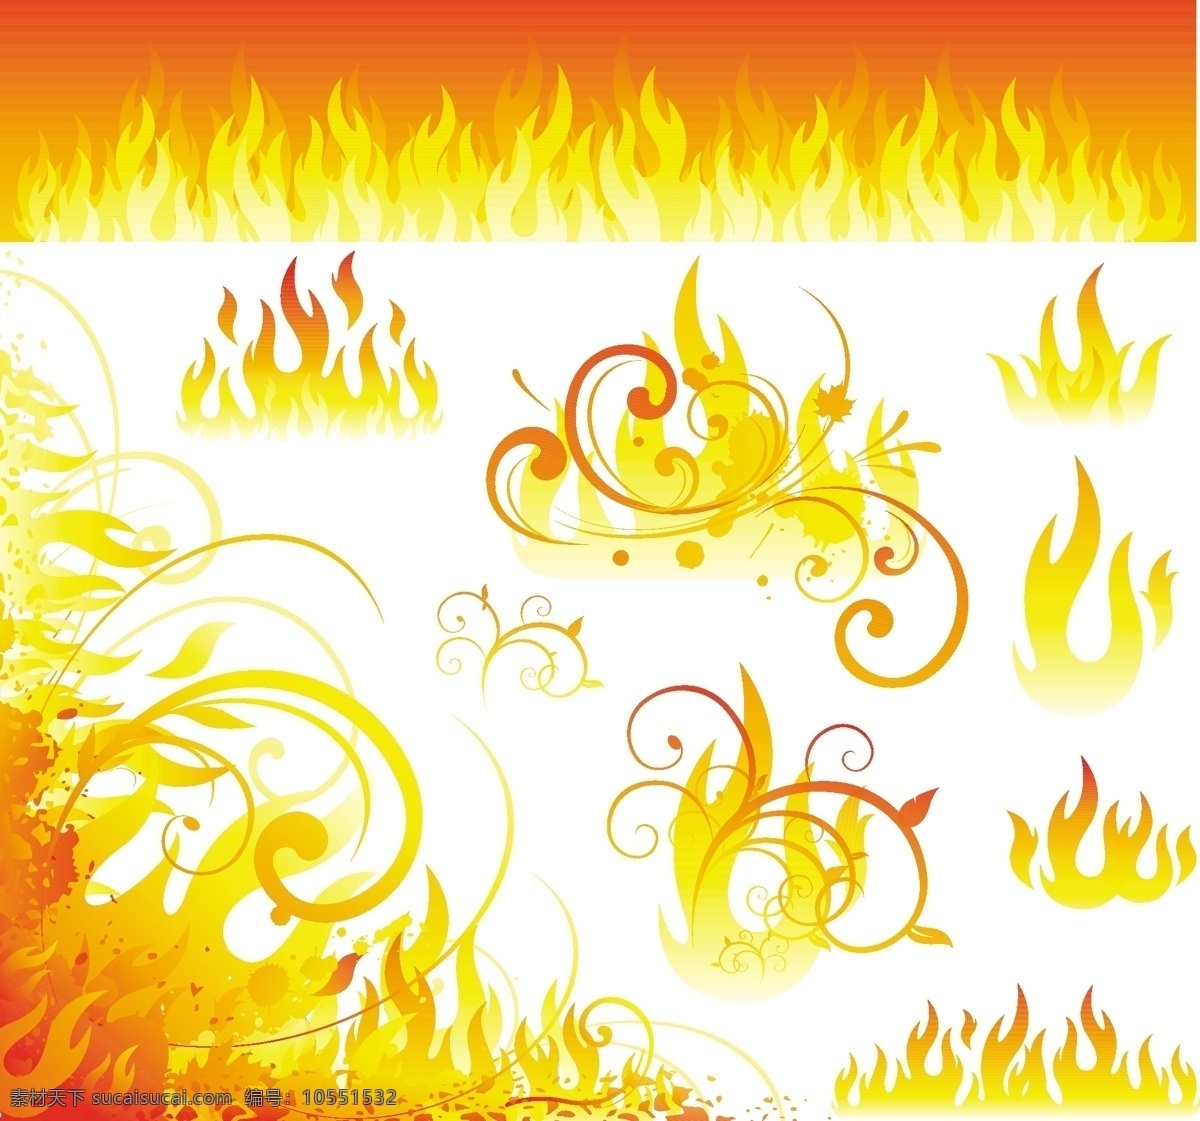 火焰 火焰标志 矢量 火焰的剪贴画 艺术 载体 自由 美工 自由火焰向量 向量 免费 蜡烛的火焰 部落火焰 矢量图 其他矢量图